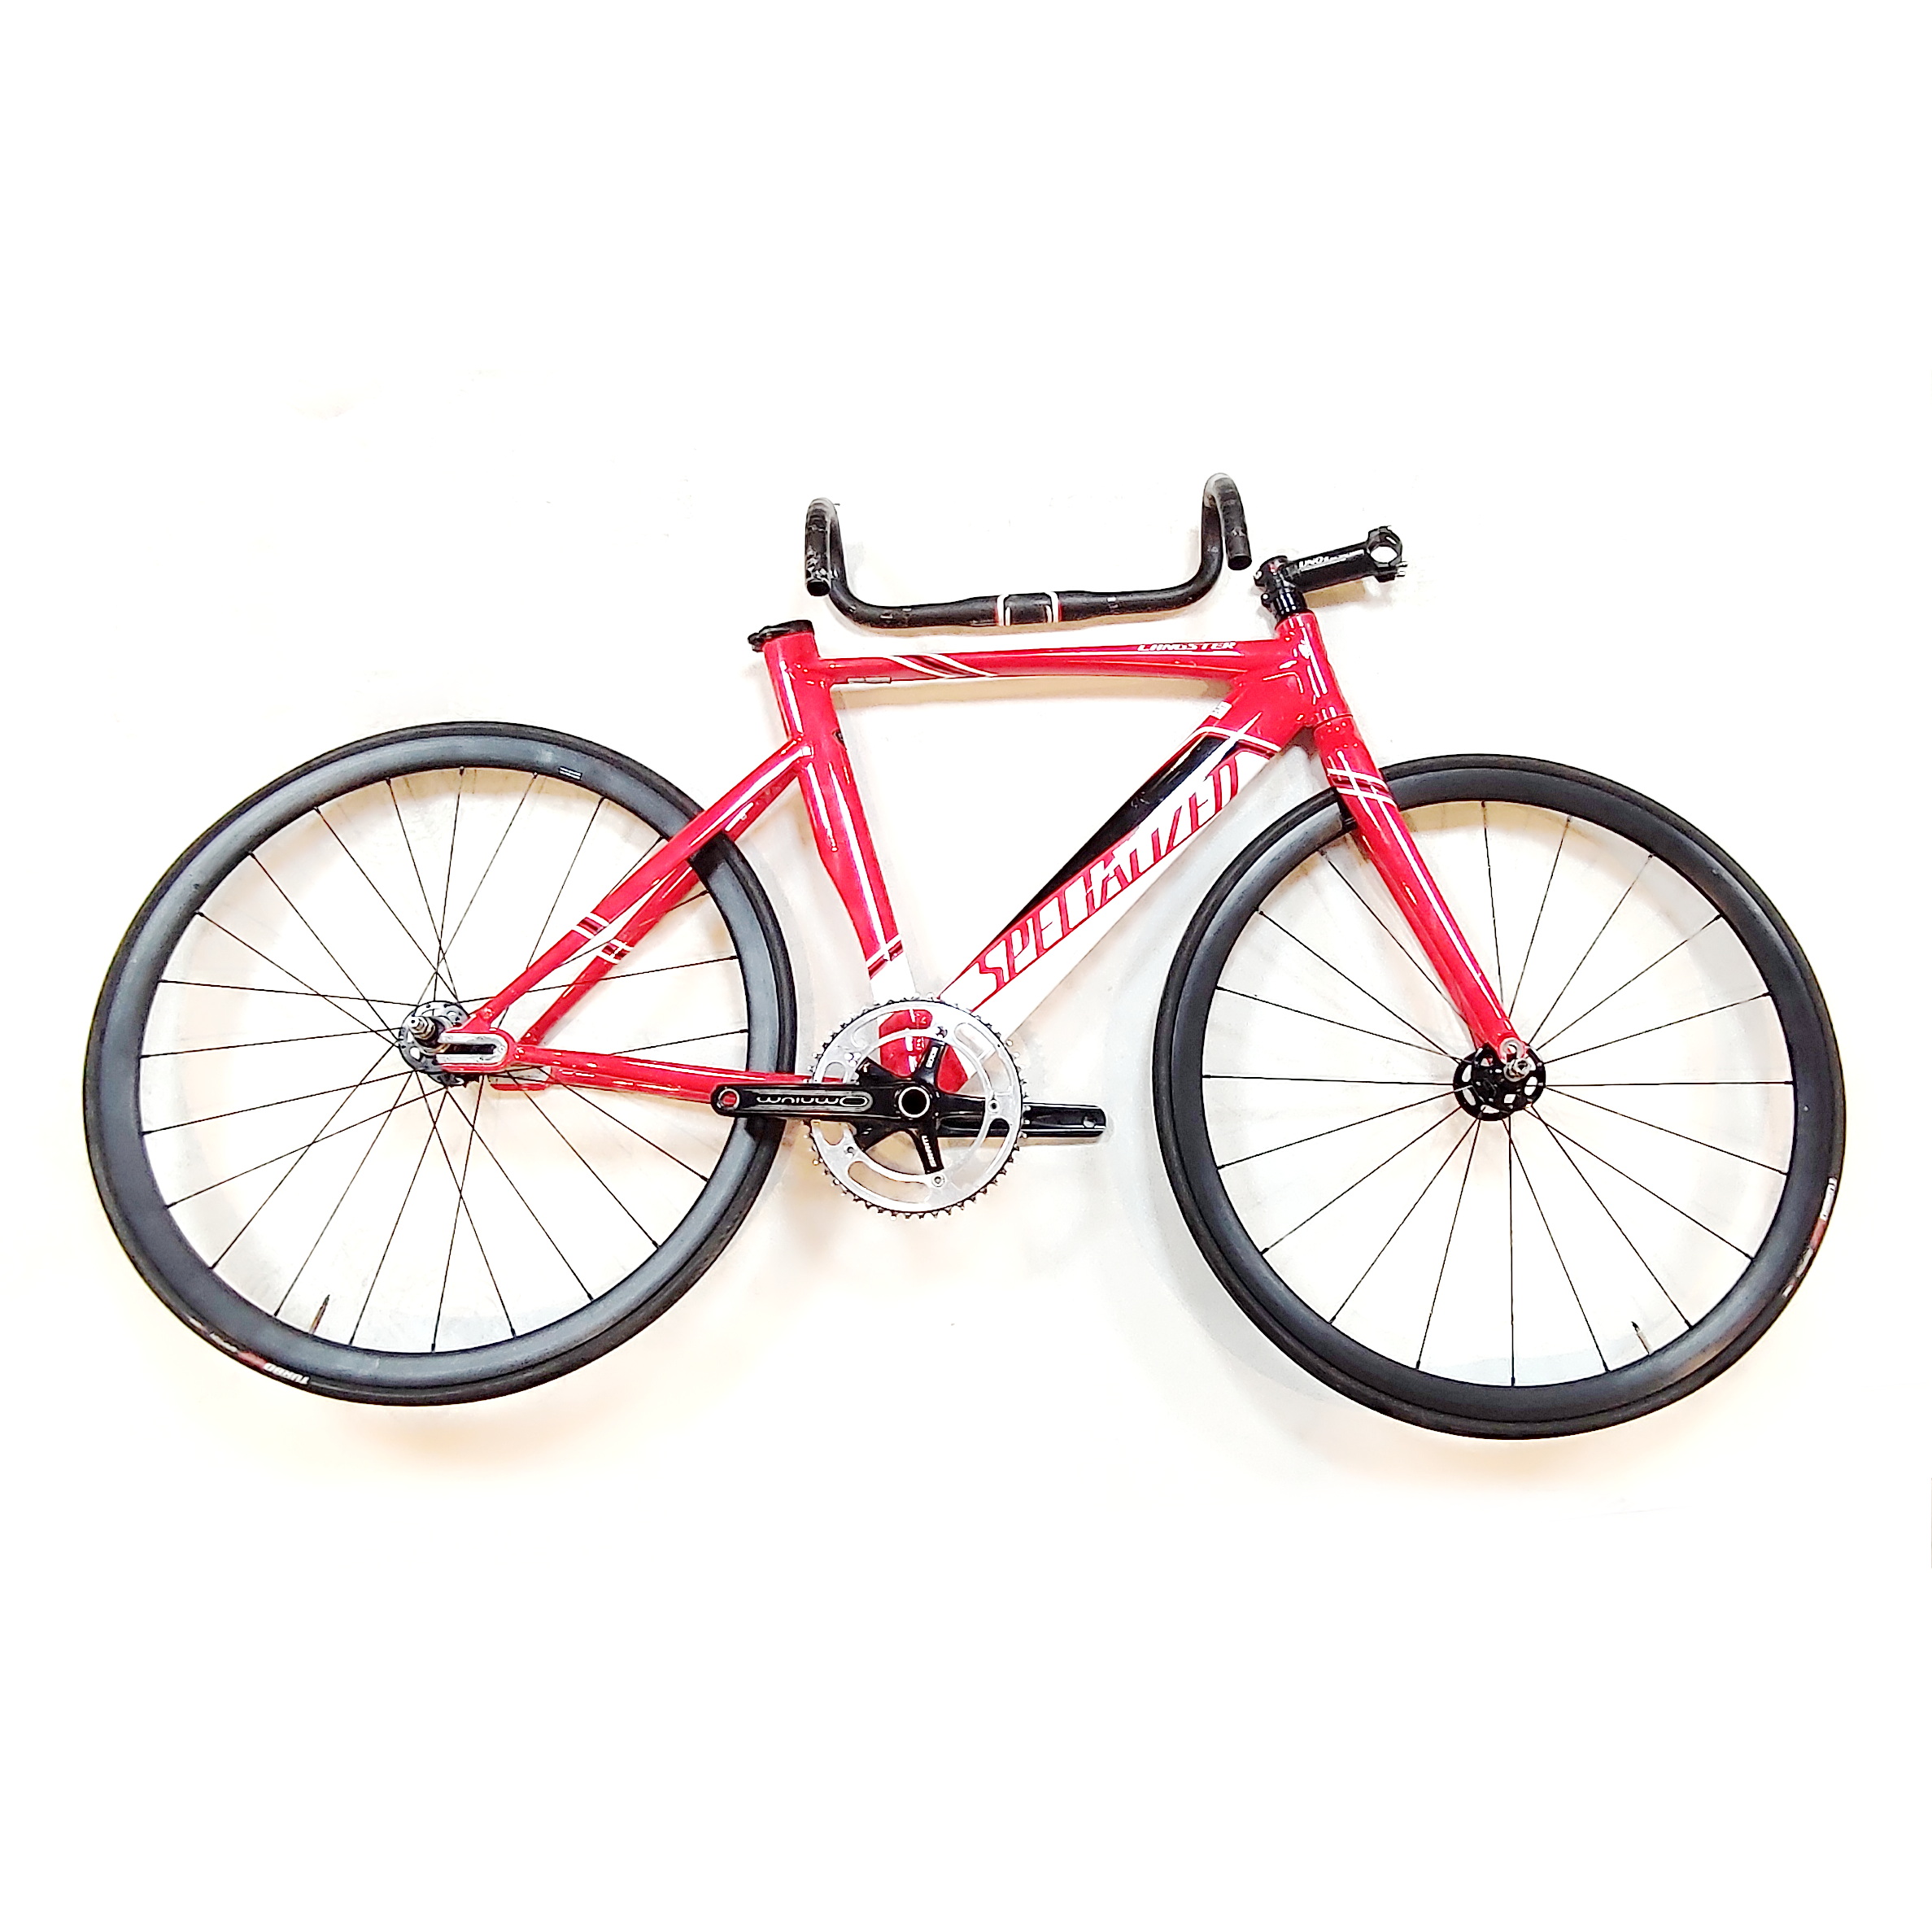 دوچرخه Specialized مدل Langster Pro Red/White/Black سایز 52 سال 2015 کارکرده